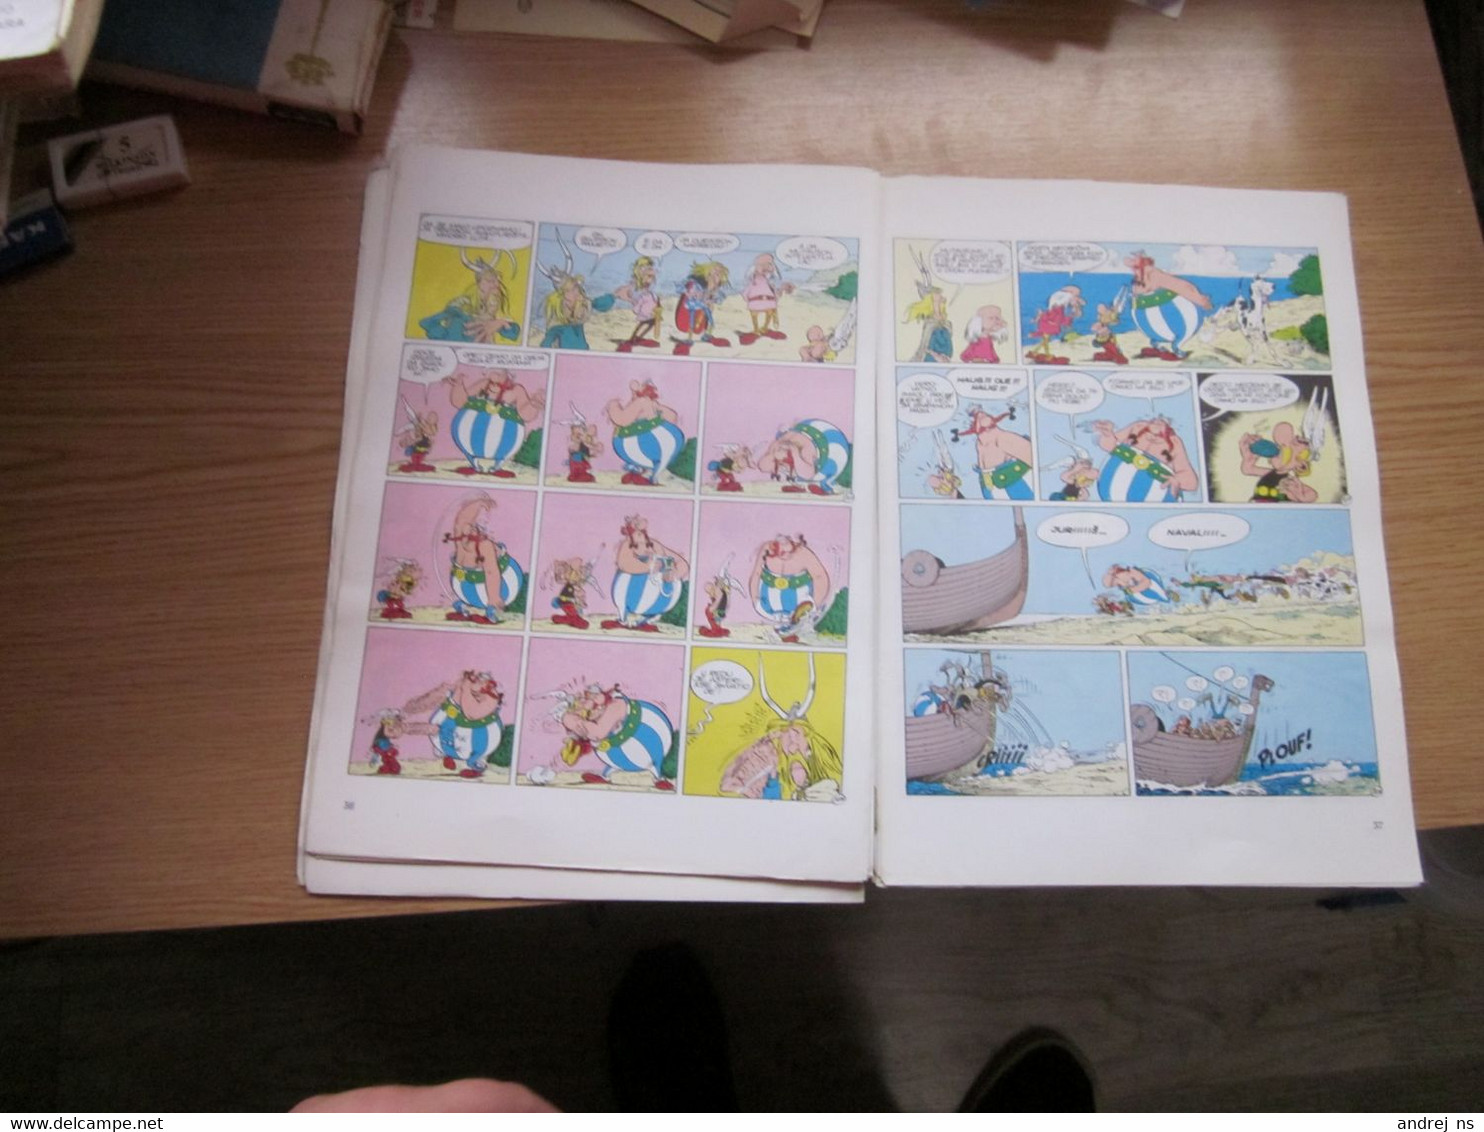 Asterix Daleko Putovanje - Lingue Scandinave